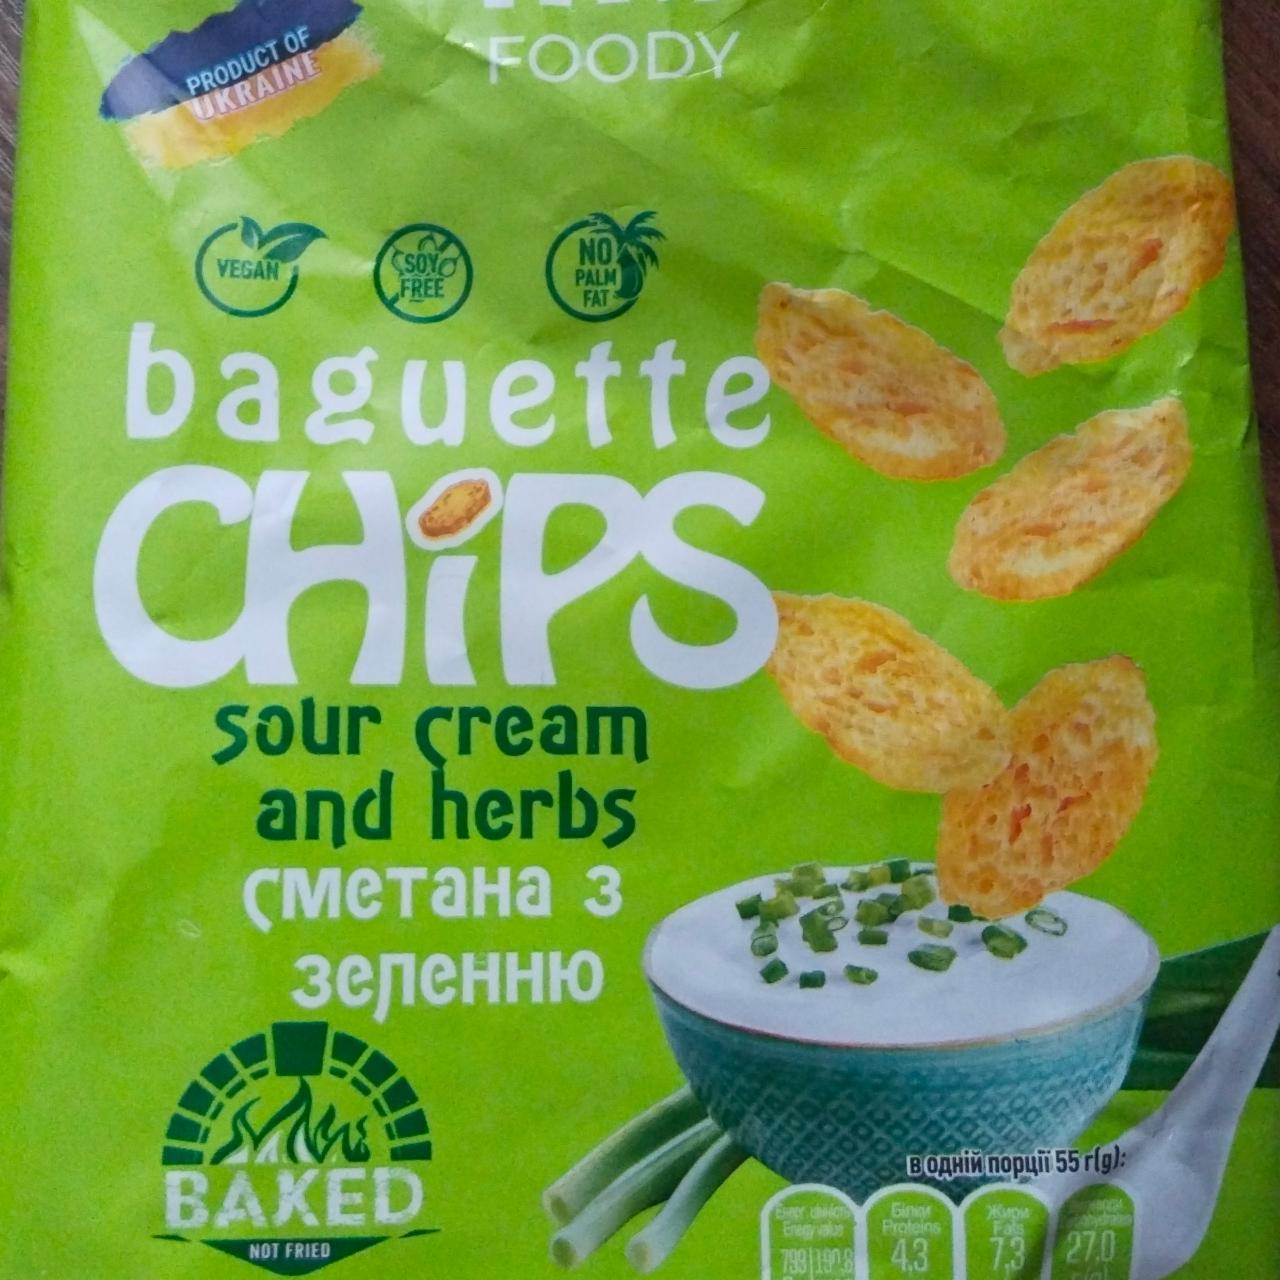 Фото - Багеты пшеничные Сметана с зеленью Foody Baguette chips MB Foody